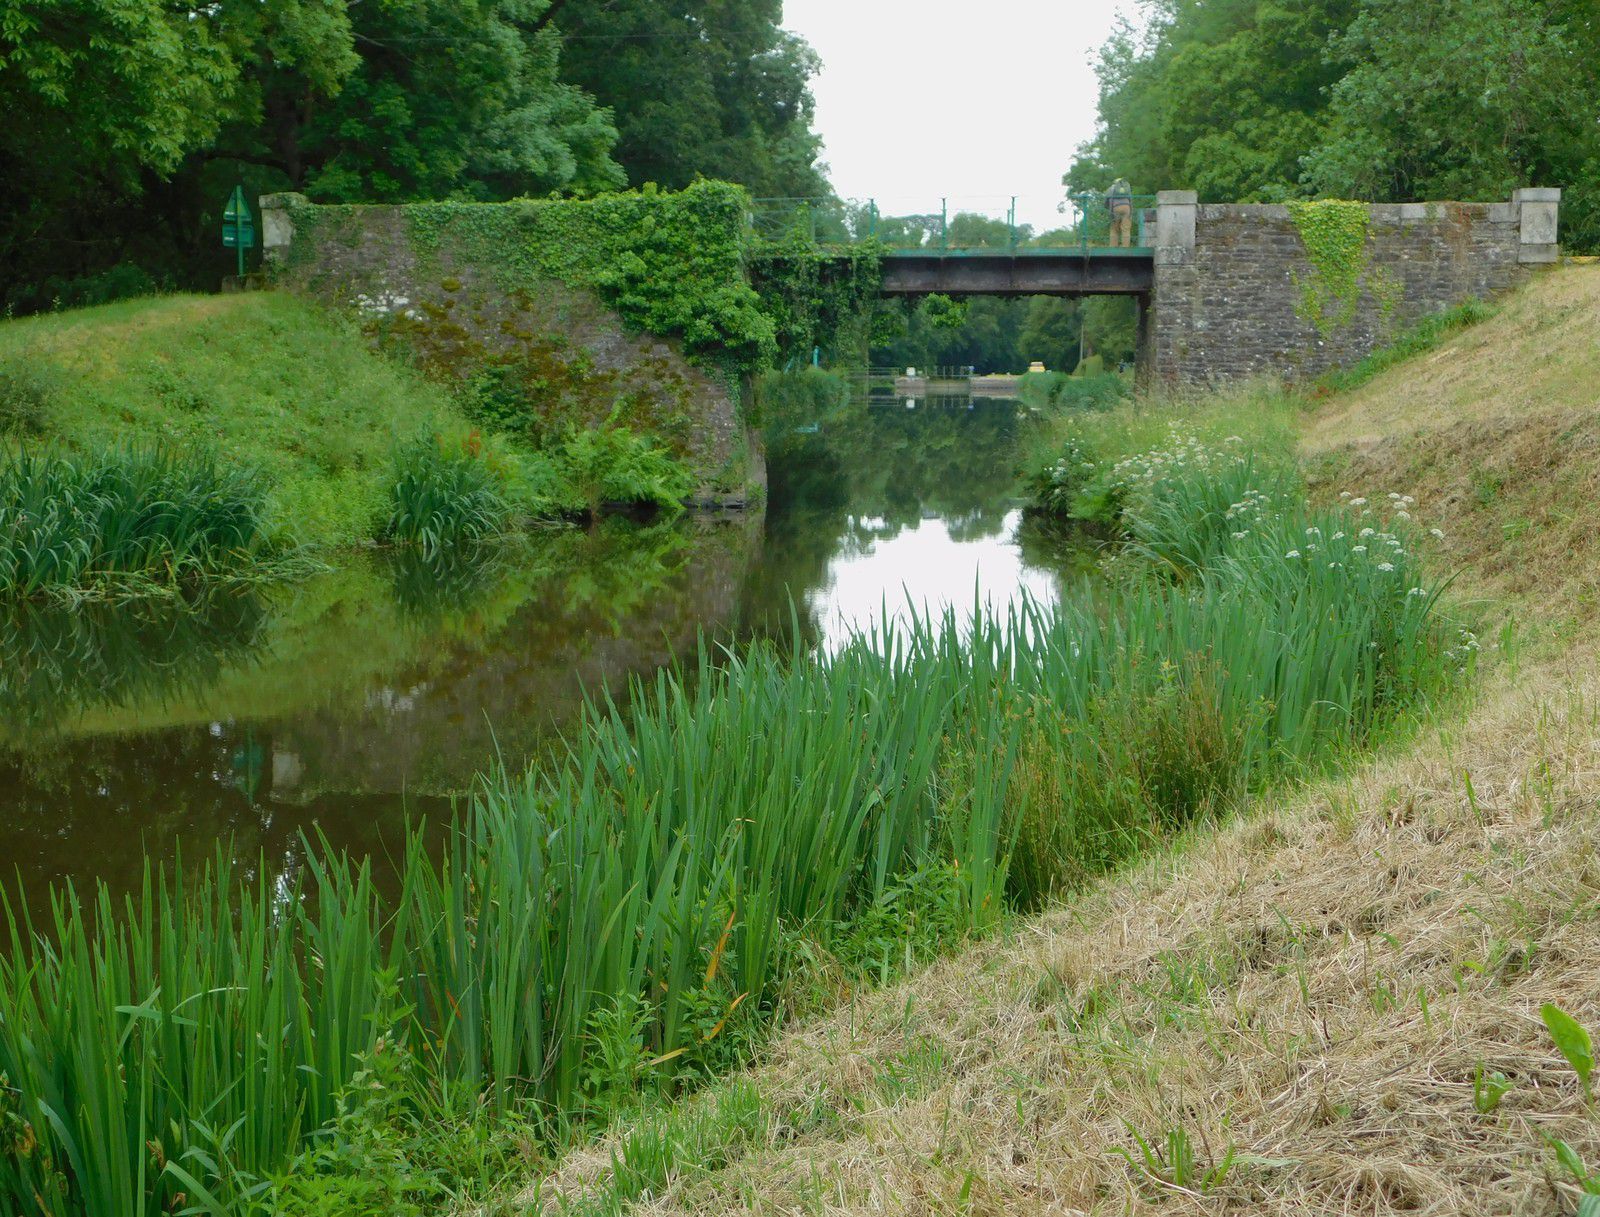 Canal de Nantes à Brest : étape 11 - Glomel / Pont-ar-Stang (en Spezet) - 80.7 km AR